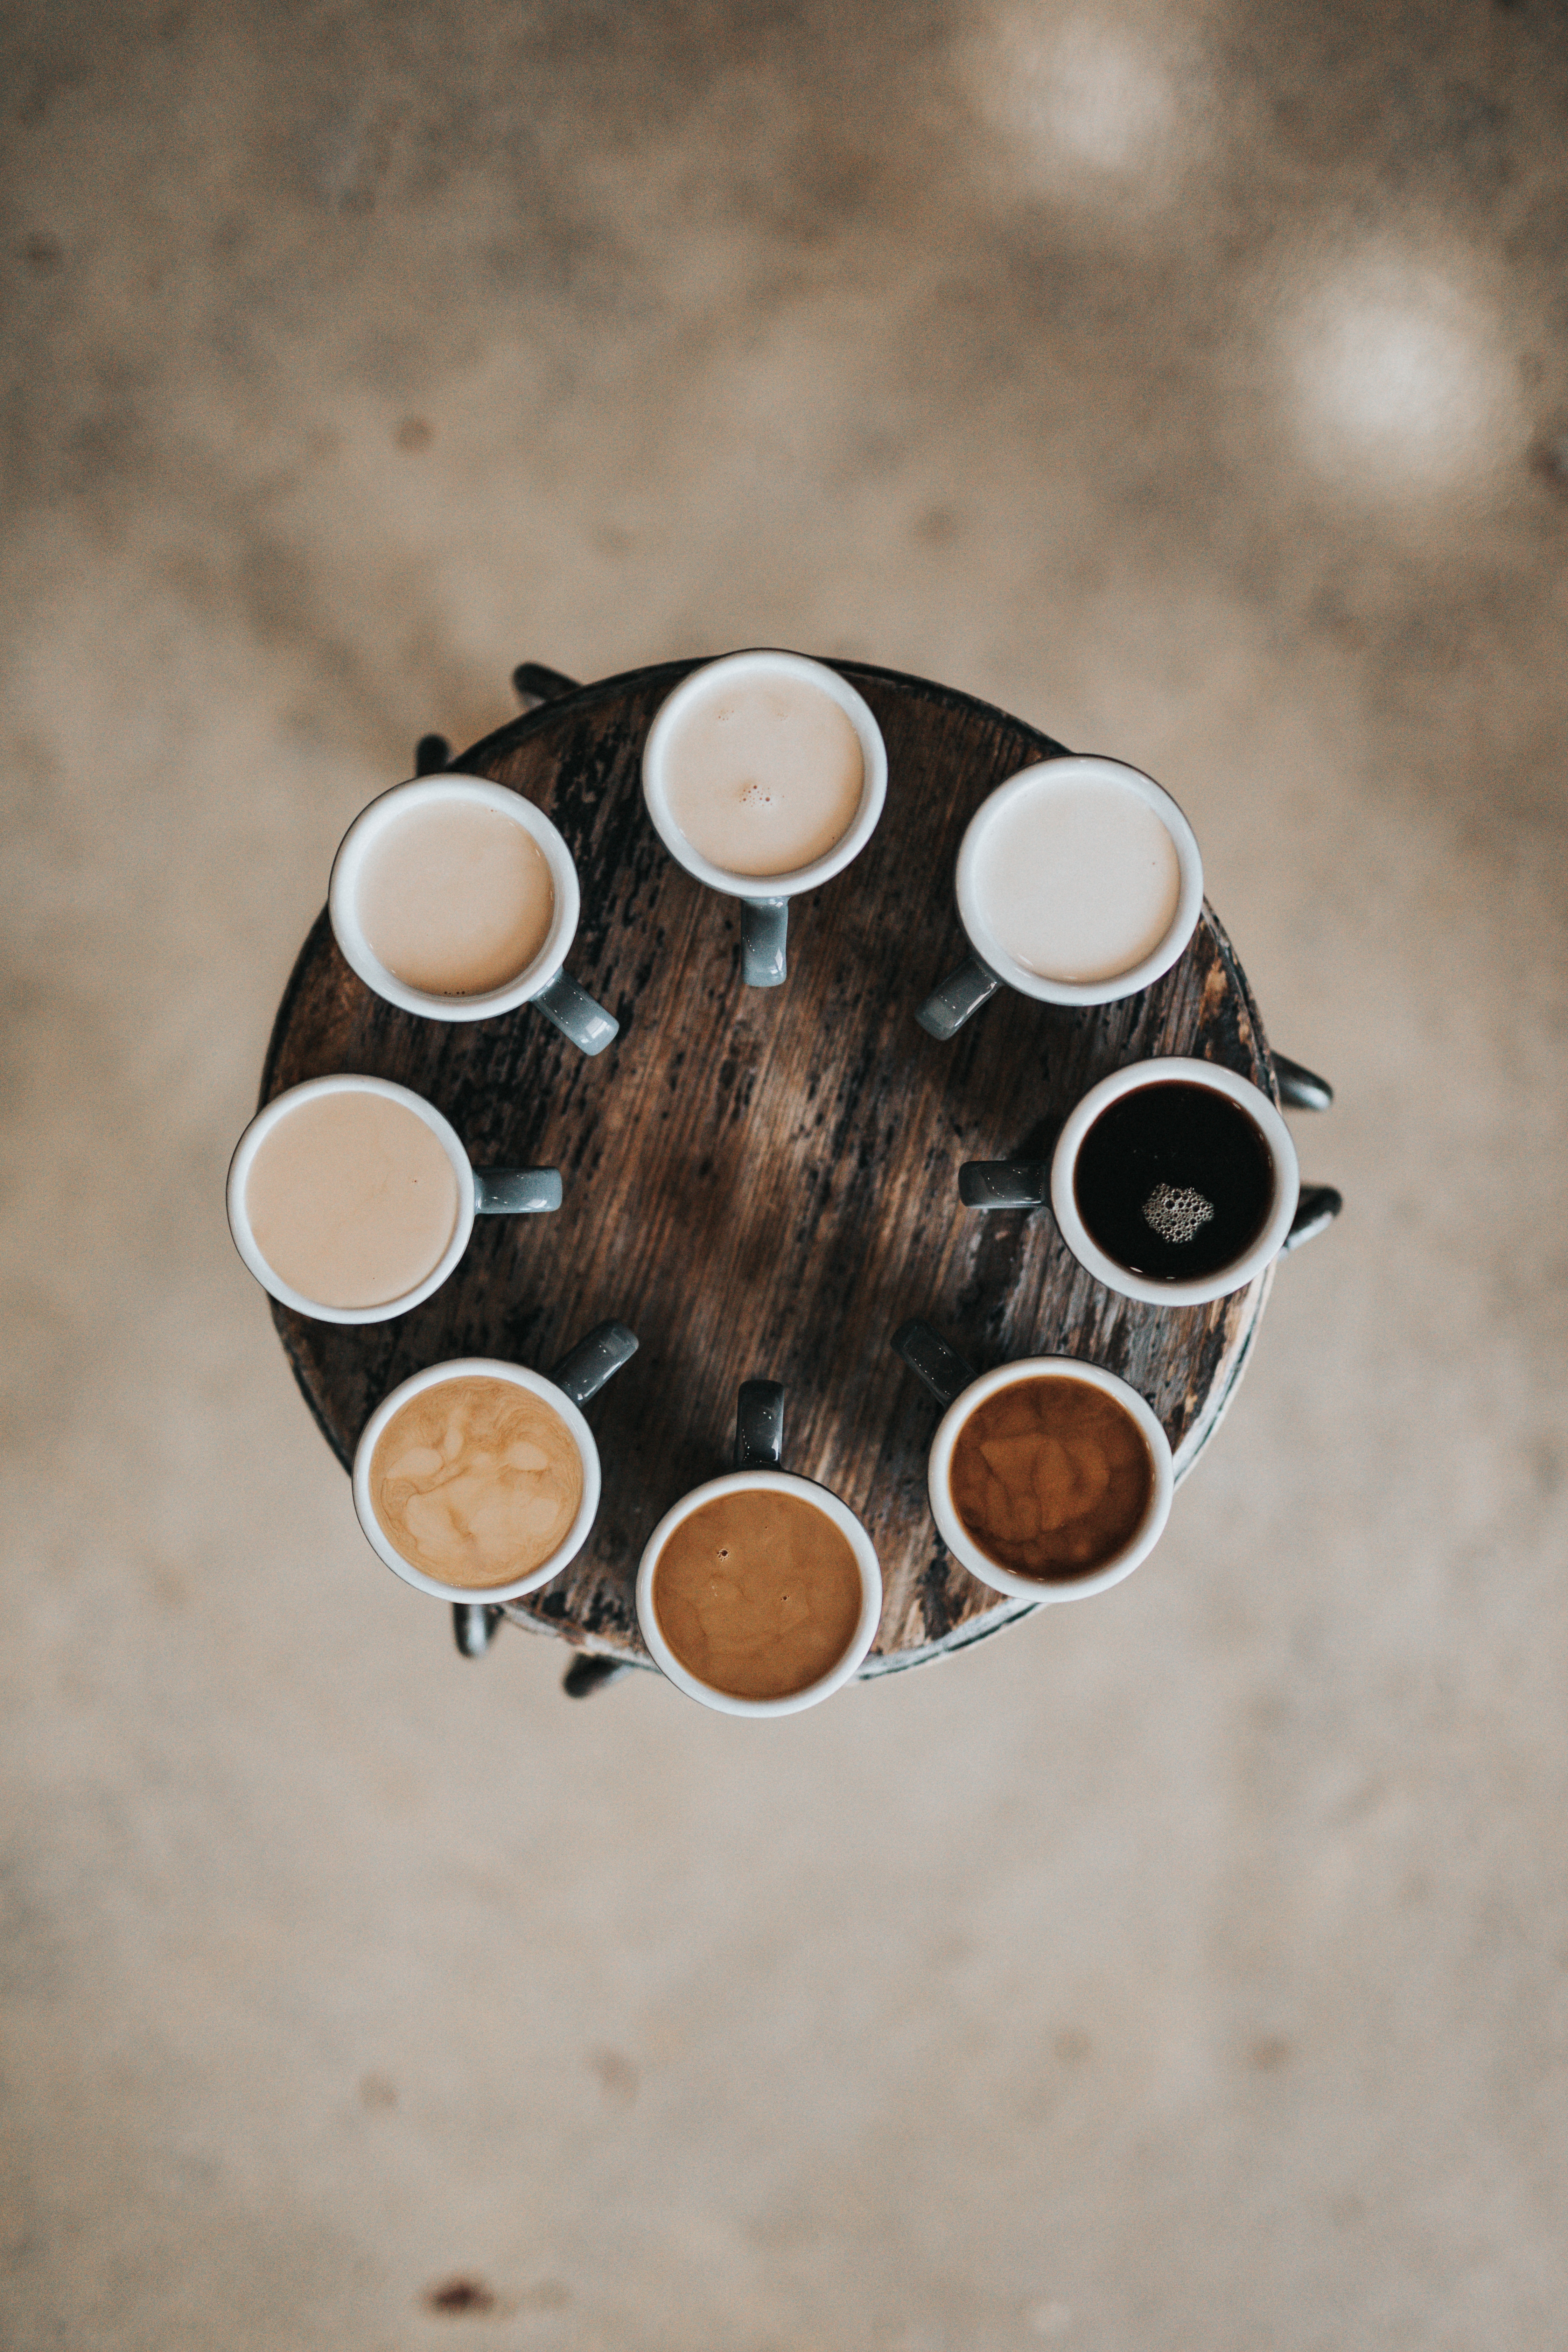 coffee| coffee mugs| coffee content| caffeine| coffee benefits| coffee